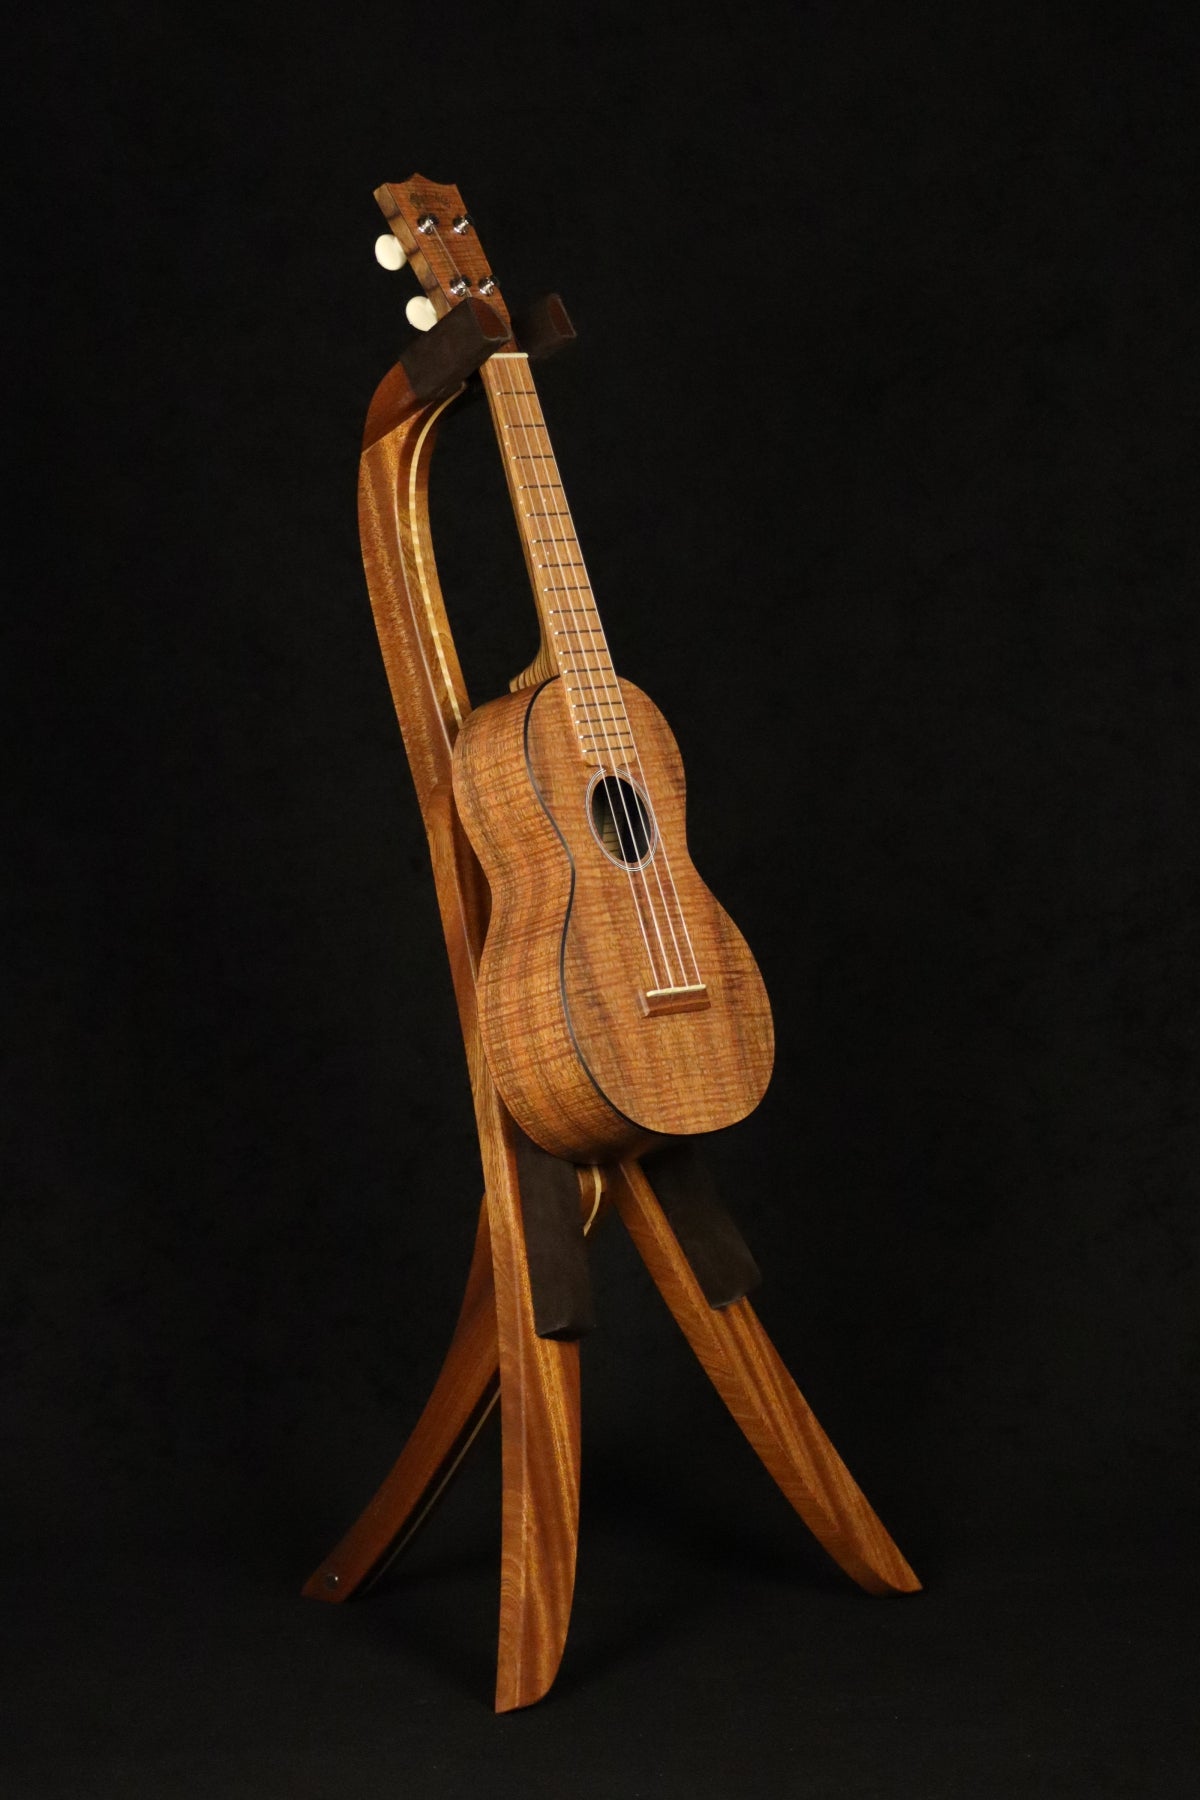 Folding sapele mahogany and curly maple wood ukulele floor stand full front image with Martin ukulele